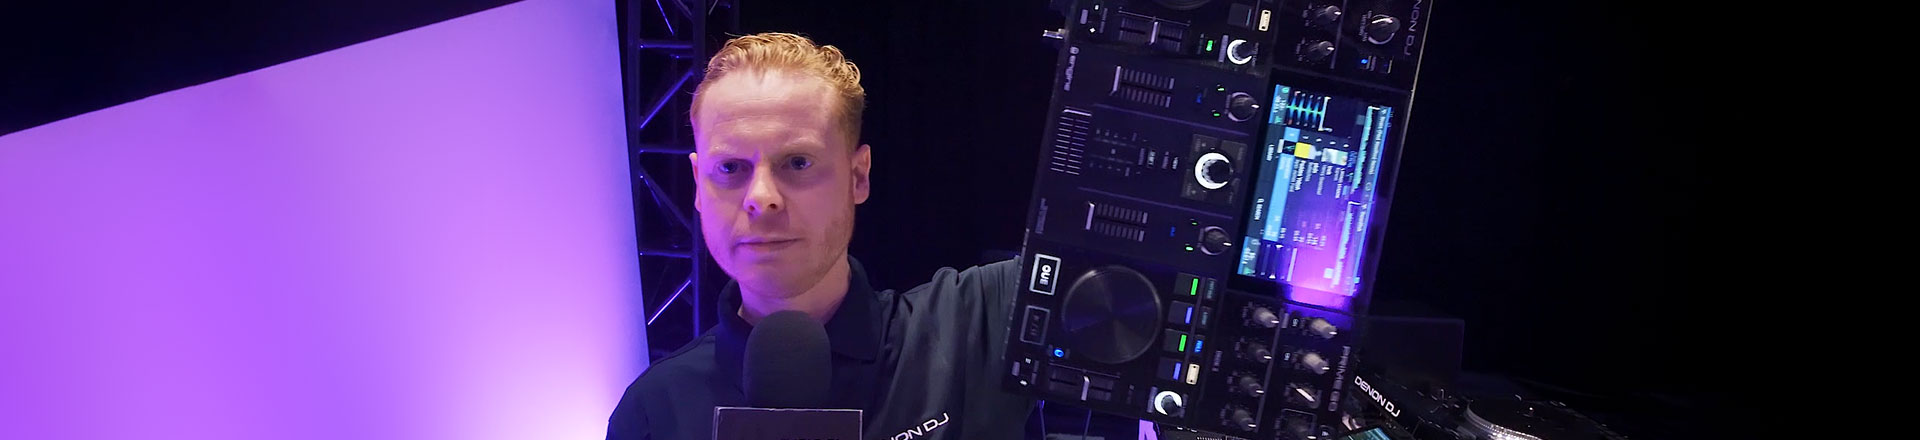 NAMM'20: Denon DJ rozbudowuje rodzinę Prime z modelami Prime 2 i Prime Go